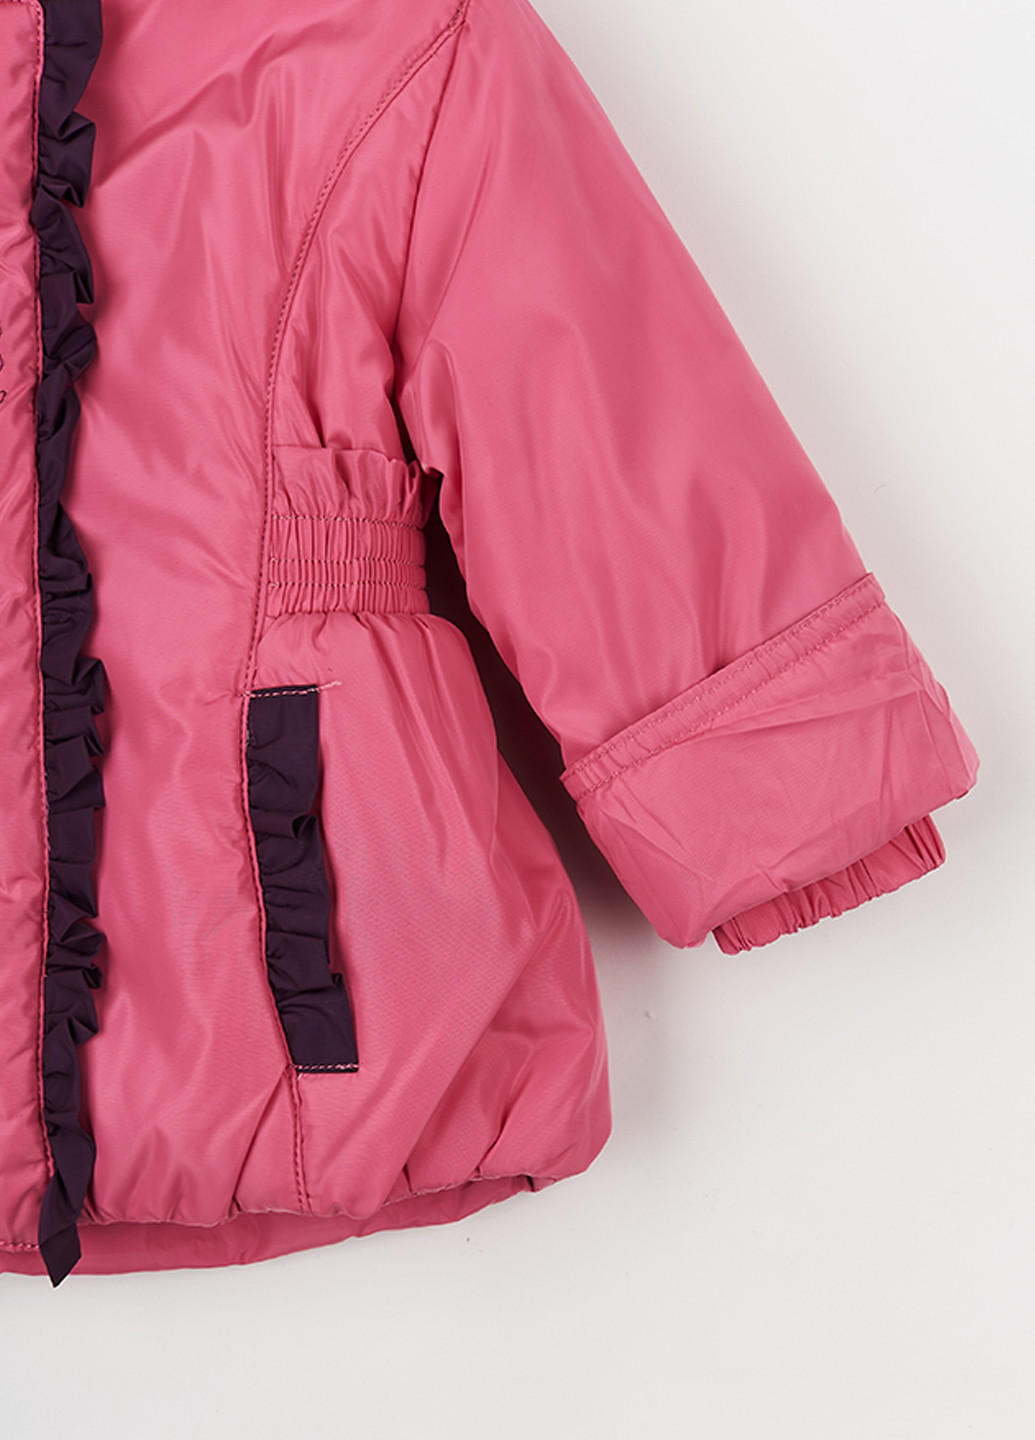 Розовый демисезонный комплект (куртка, полукомбинезон) Palhare